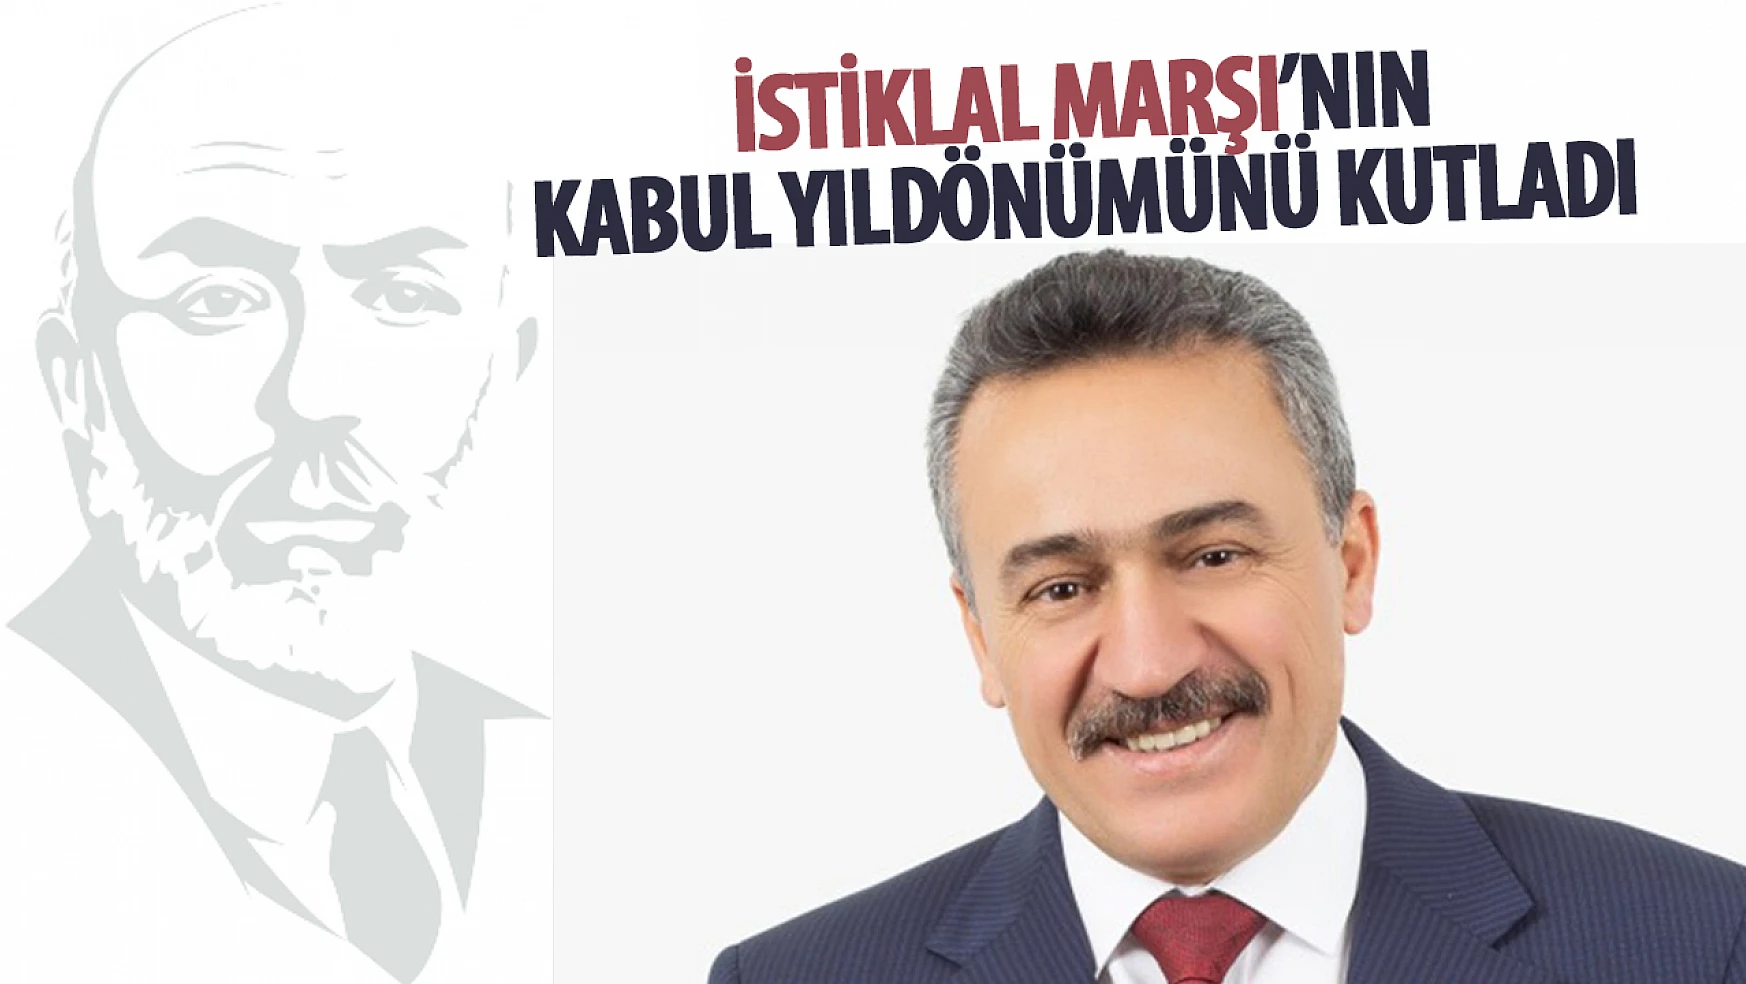 Seydişehir Belediye Başkanı Mehmet Tutal, 'Milli Marşımızın Kabulünün 103. Yılı kutlu olsun'